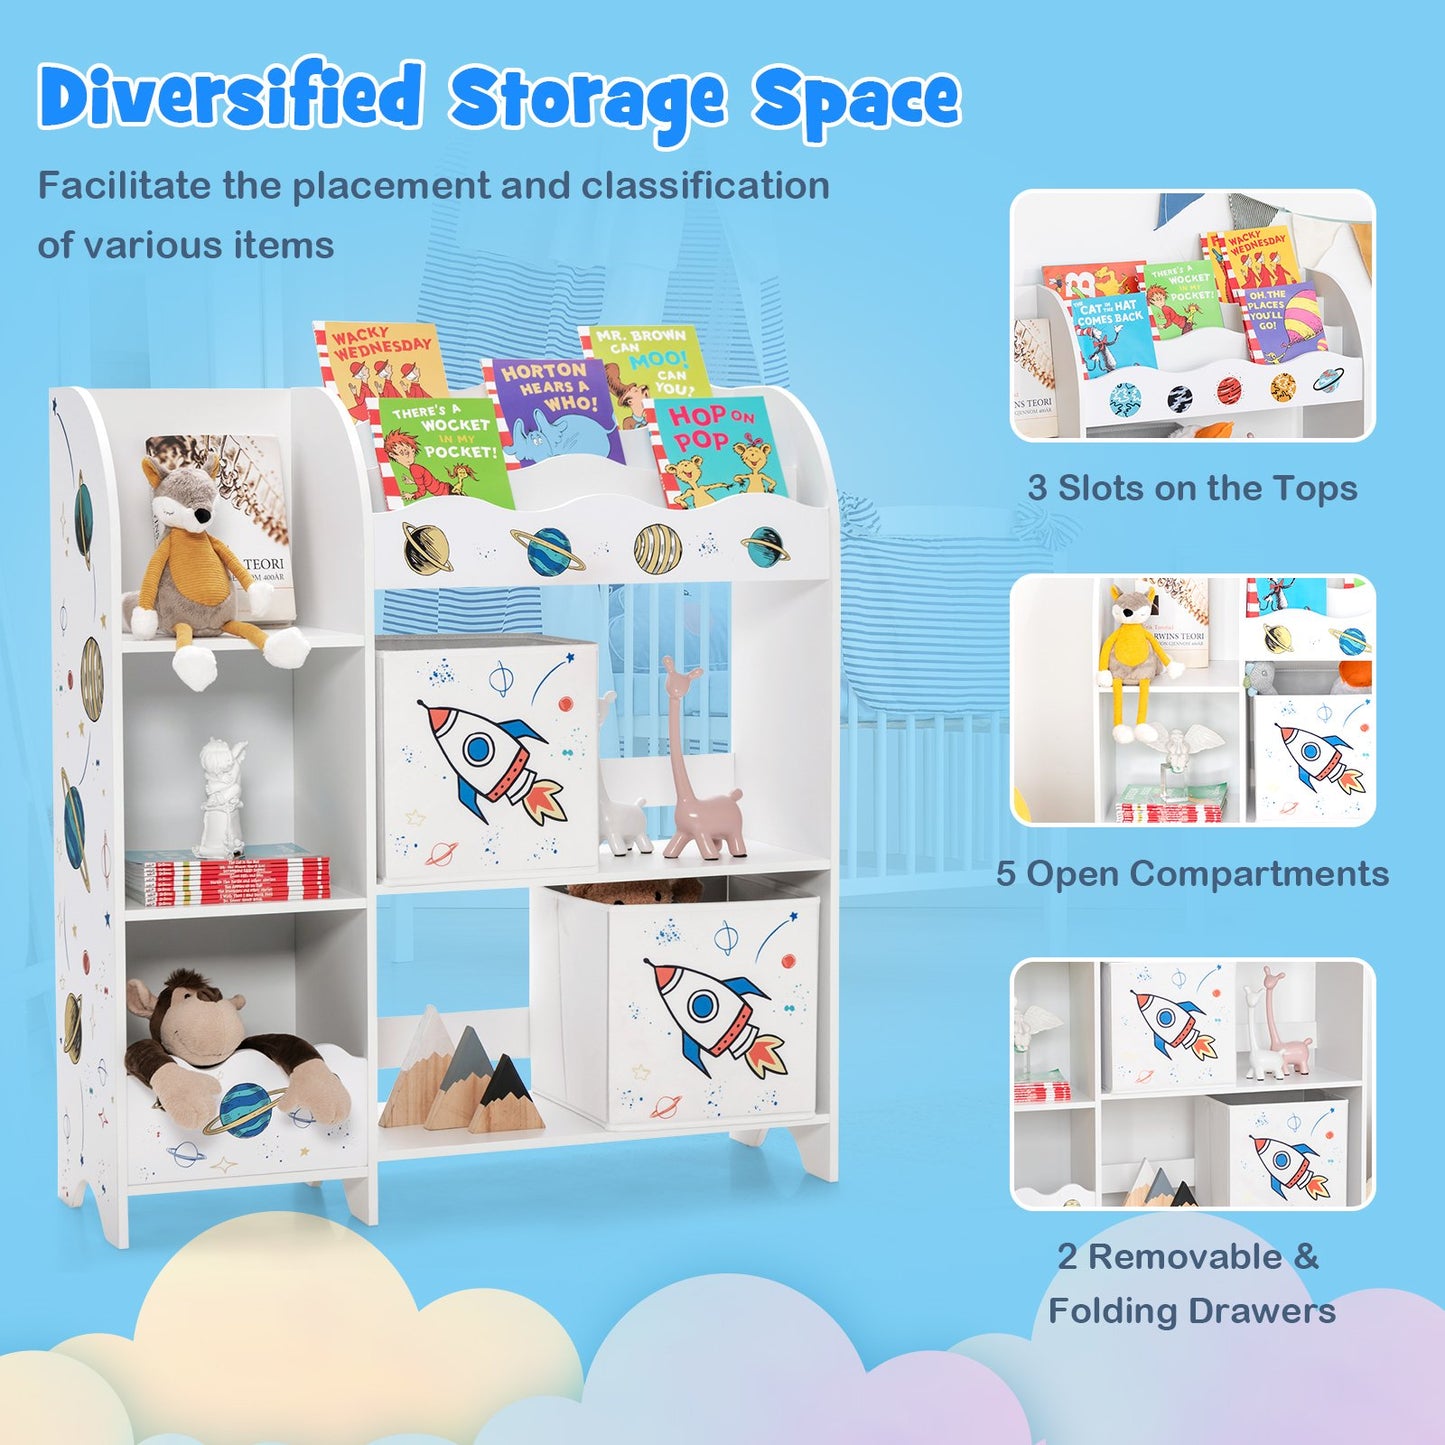 Wooden Children Storage Cabinet with Storage Bins, White